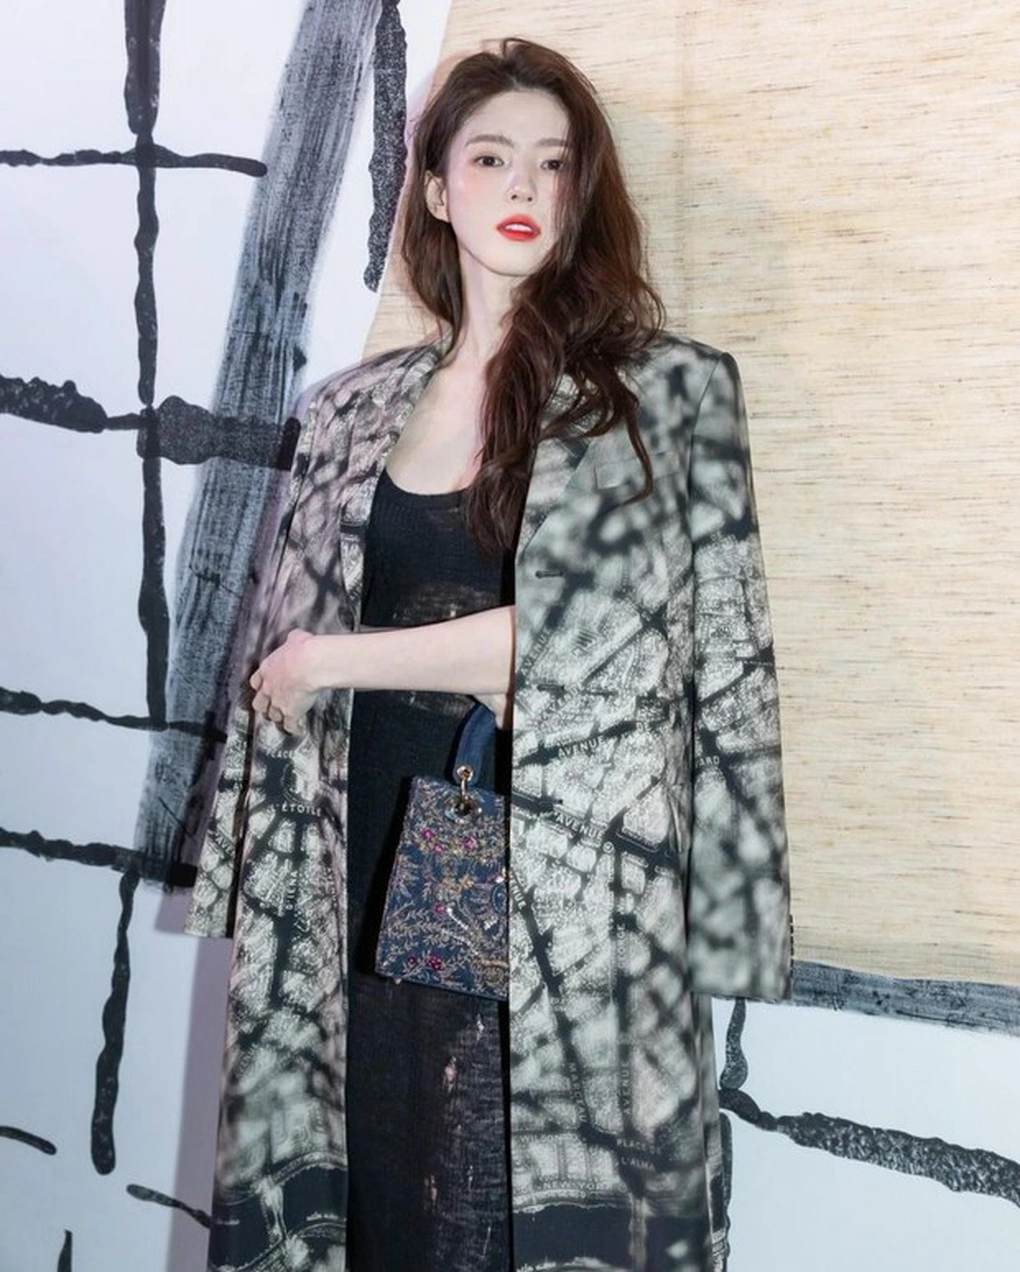 Nữ diễn viên cũng được xem là biểu tượng nhan sắc mới của giới giải trí Hàn Quốc. Với nét đẹp ma mị, lạnh lùng, cá tính, pha chút ngọt ngào của ngôi sao 30 tuổi khiến nhiều người hâm mộ mê mẩn. Năm 2020, Han So Hee vượt mặt nhiều đàn chị để trở thành nữ hoàng quảng cáo mới của xứ sở kim chi.